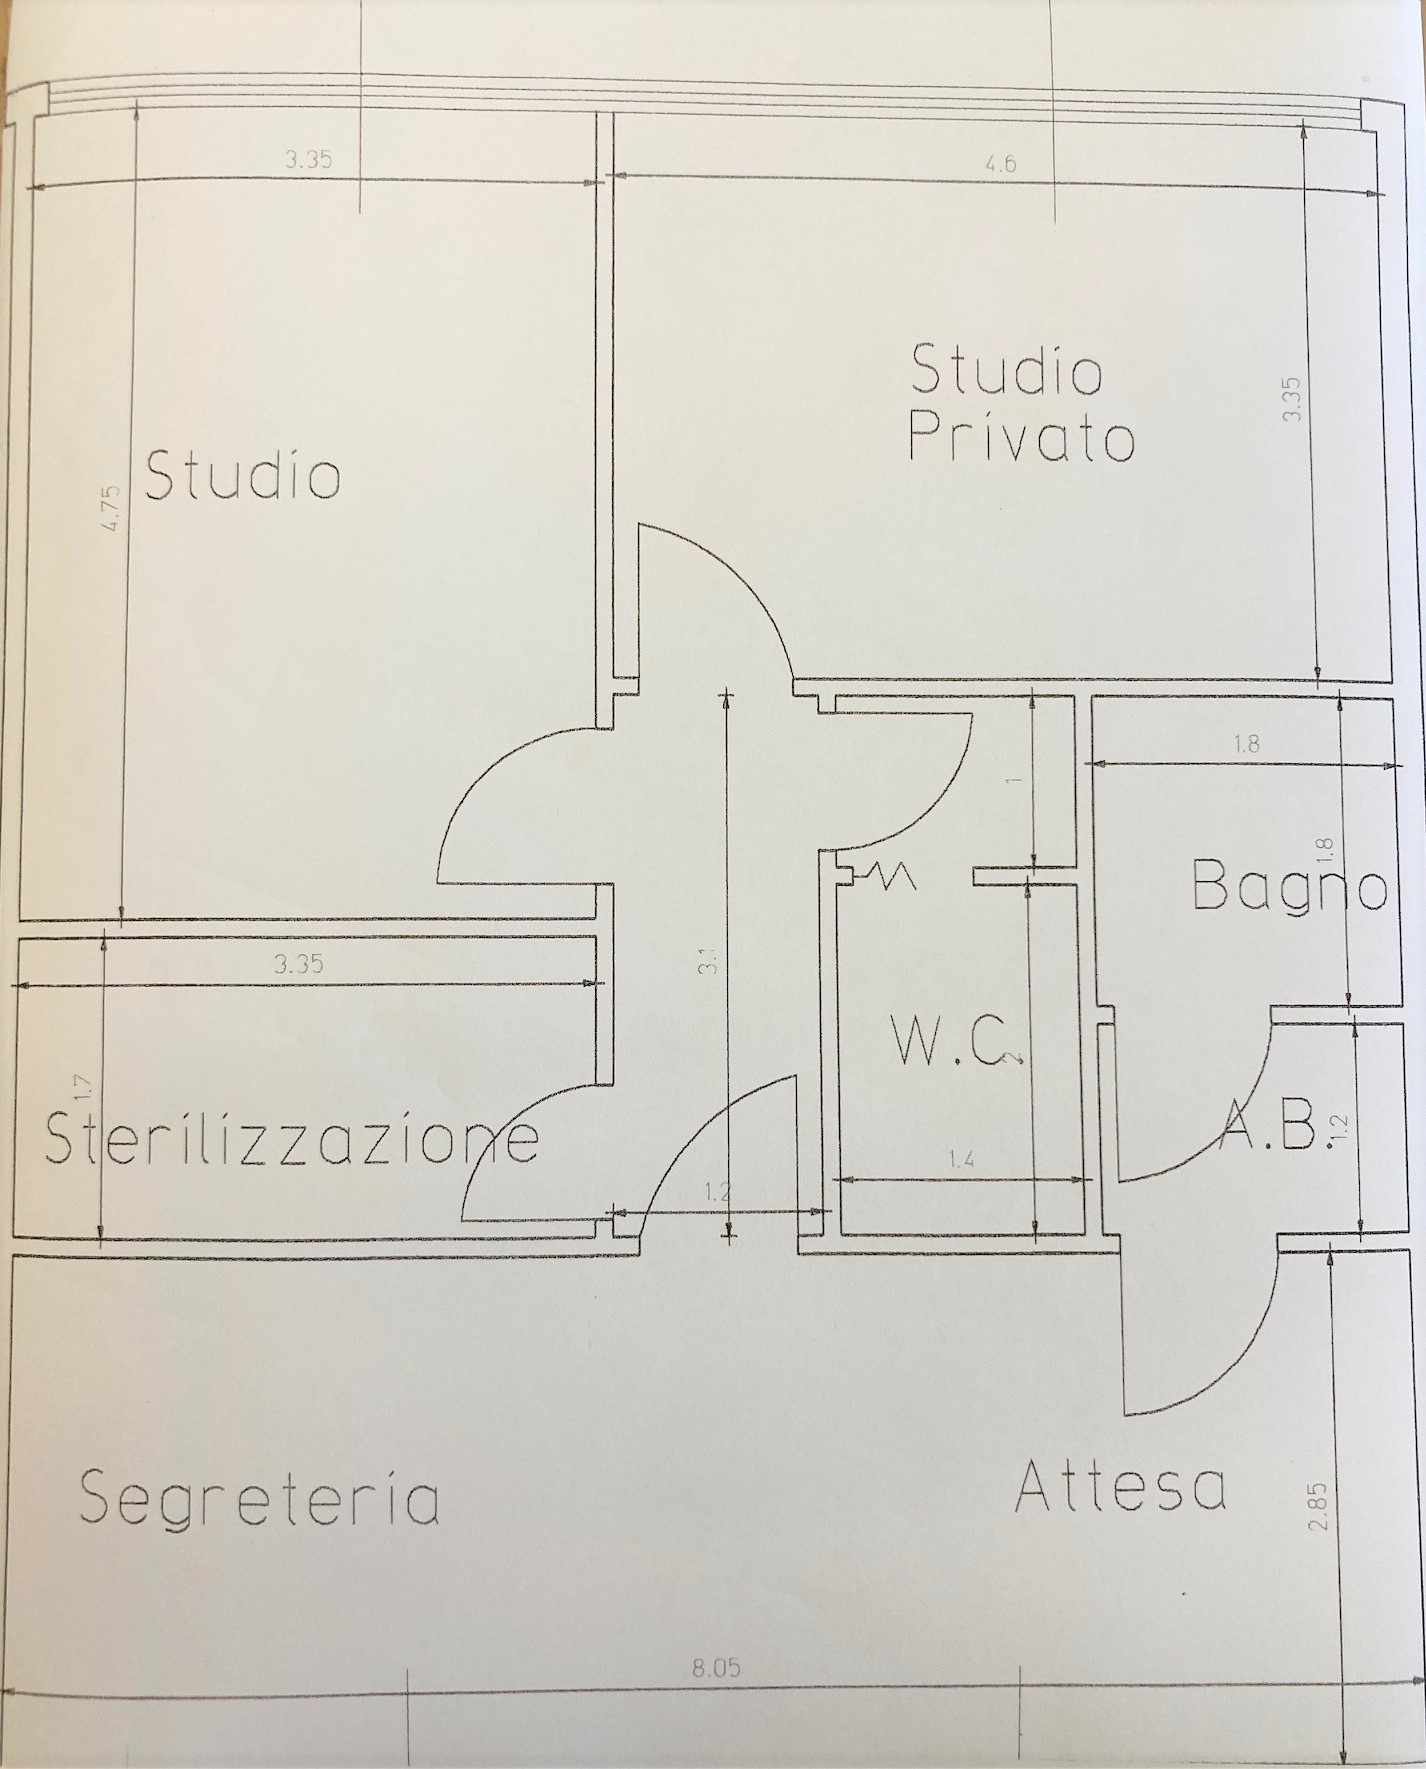 Fondo / Negozio / Ufficio -  Monteroni d'Arbia